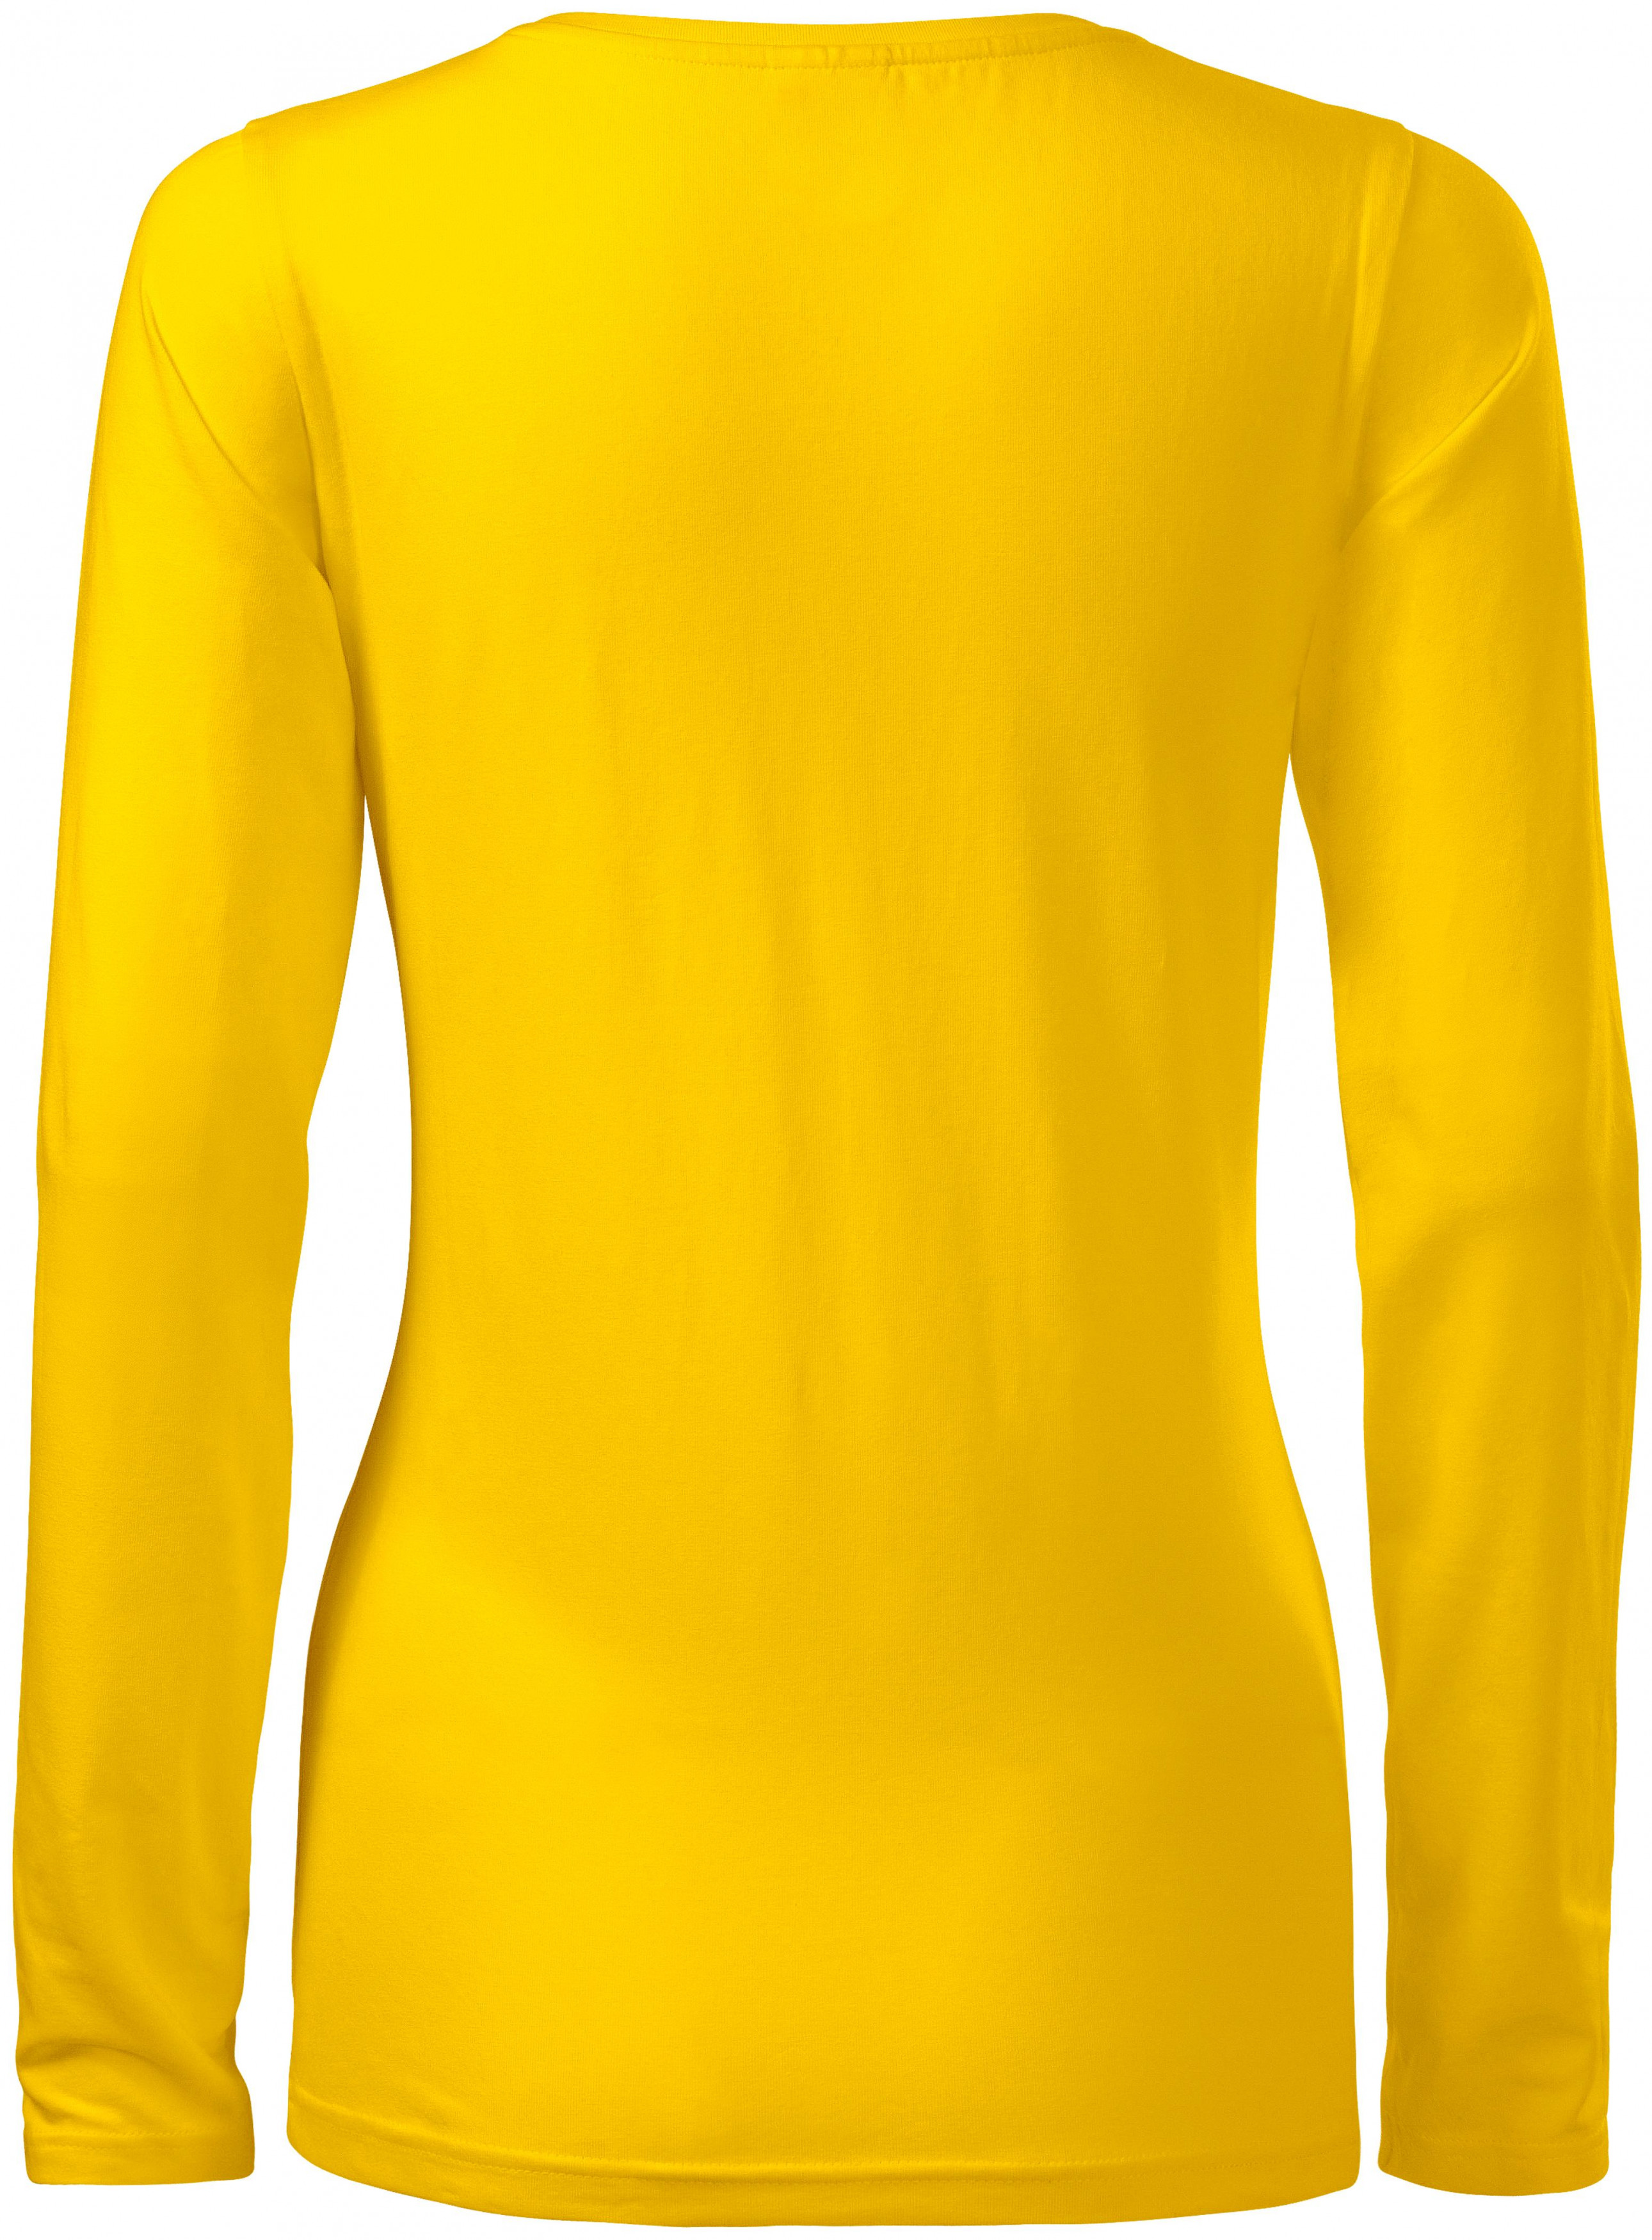 Dámske tričko priliehavé s dlhým rukávom, žltá, M